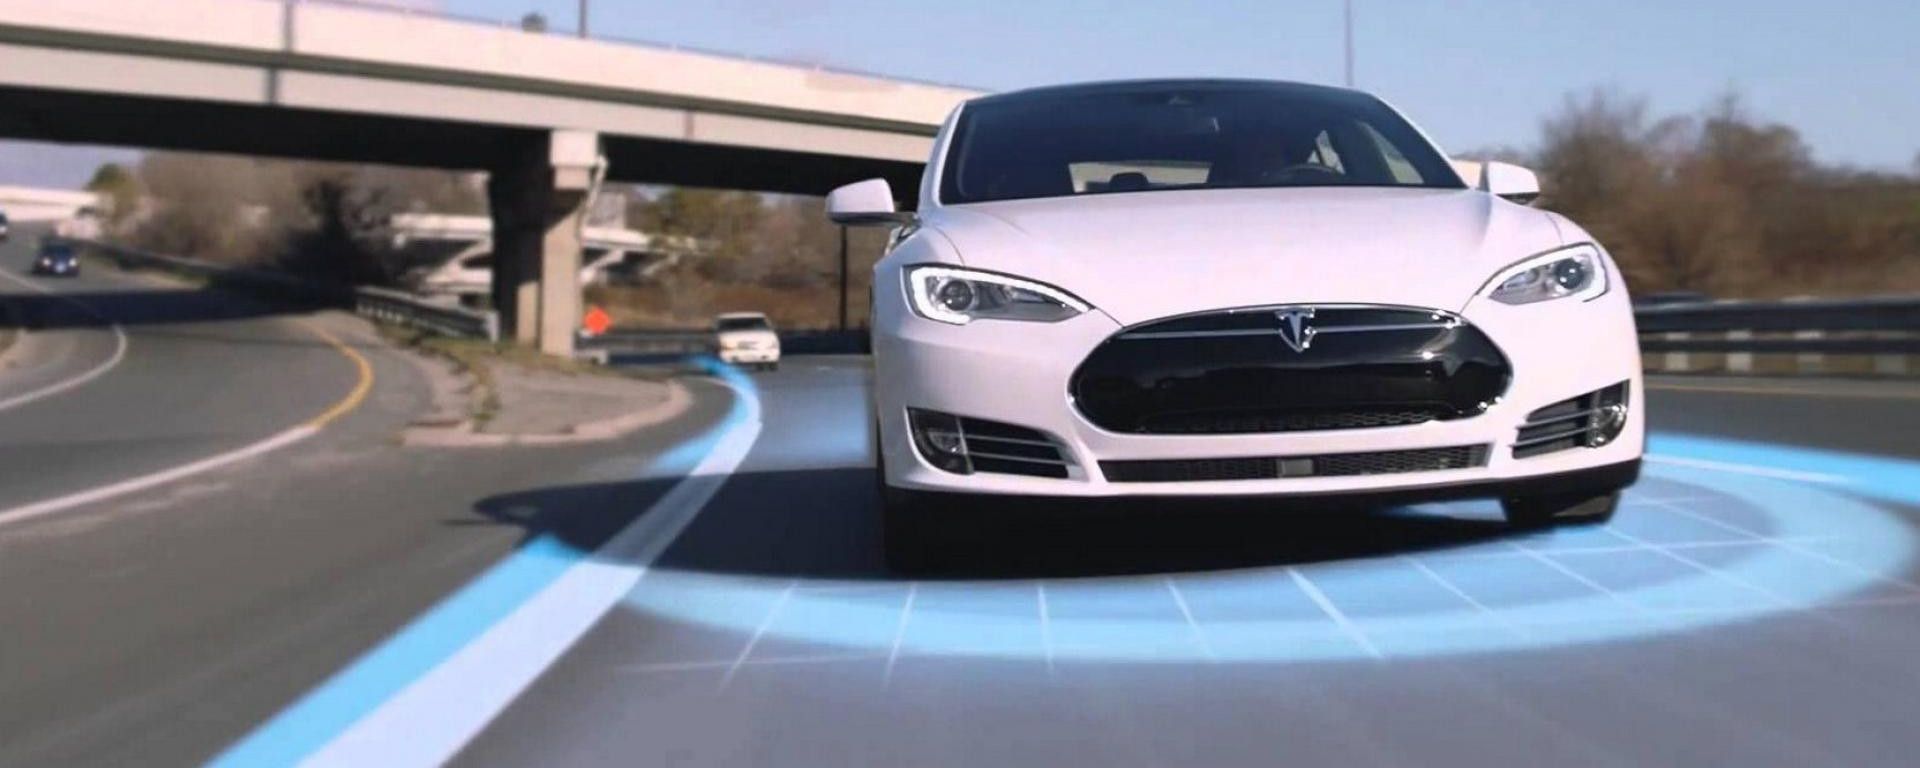 Tesla Autopilot 2020, guida autonoma con restrizioni in Europa ...